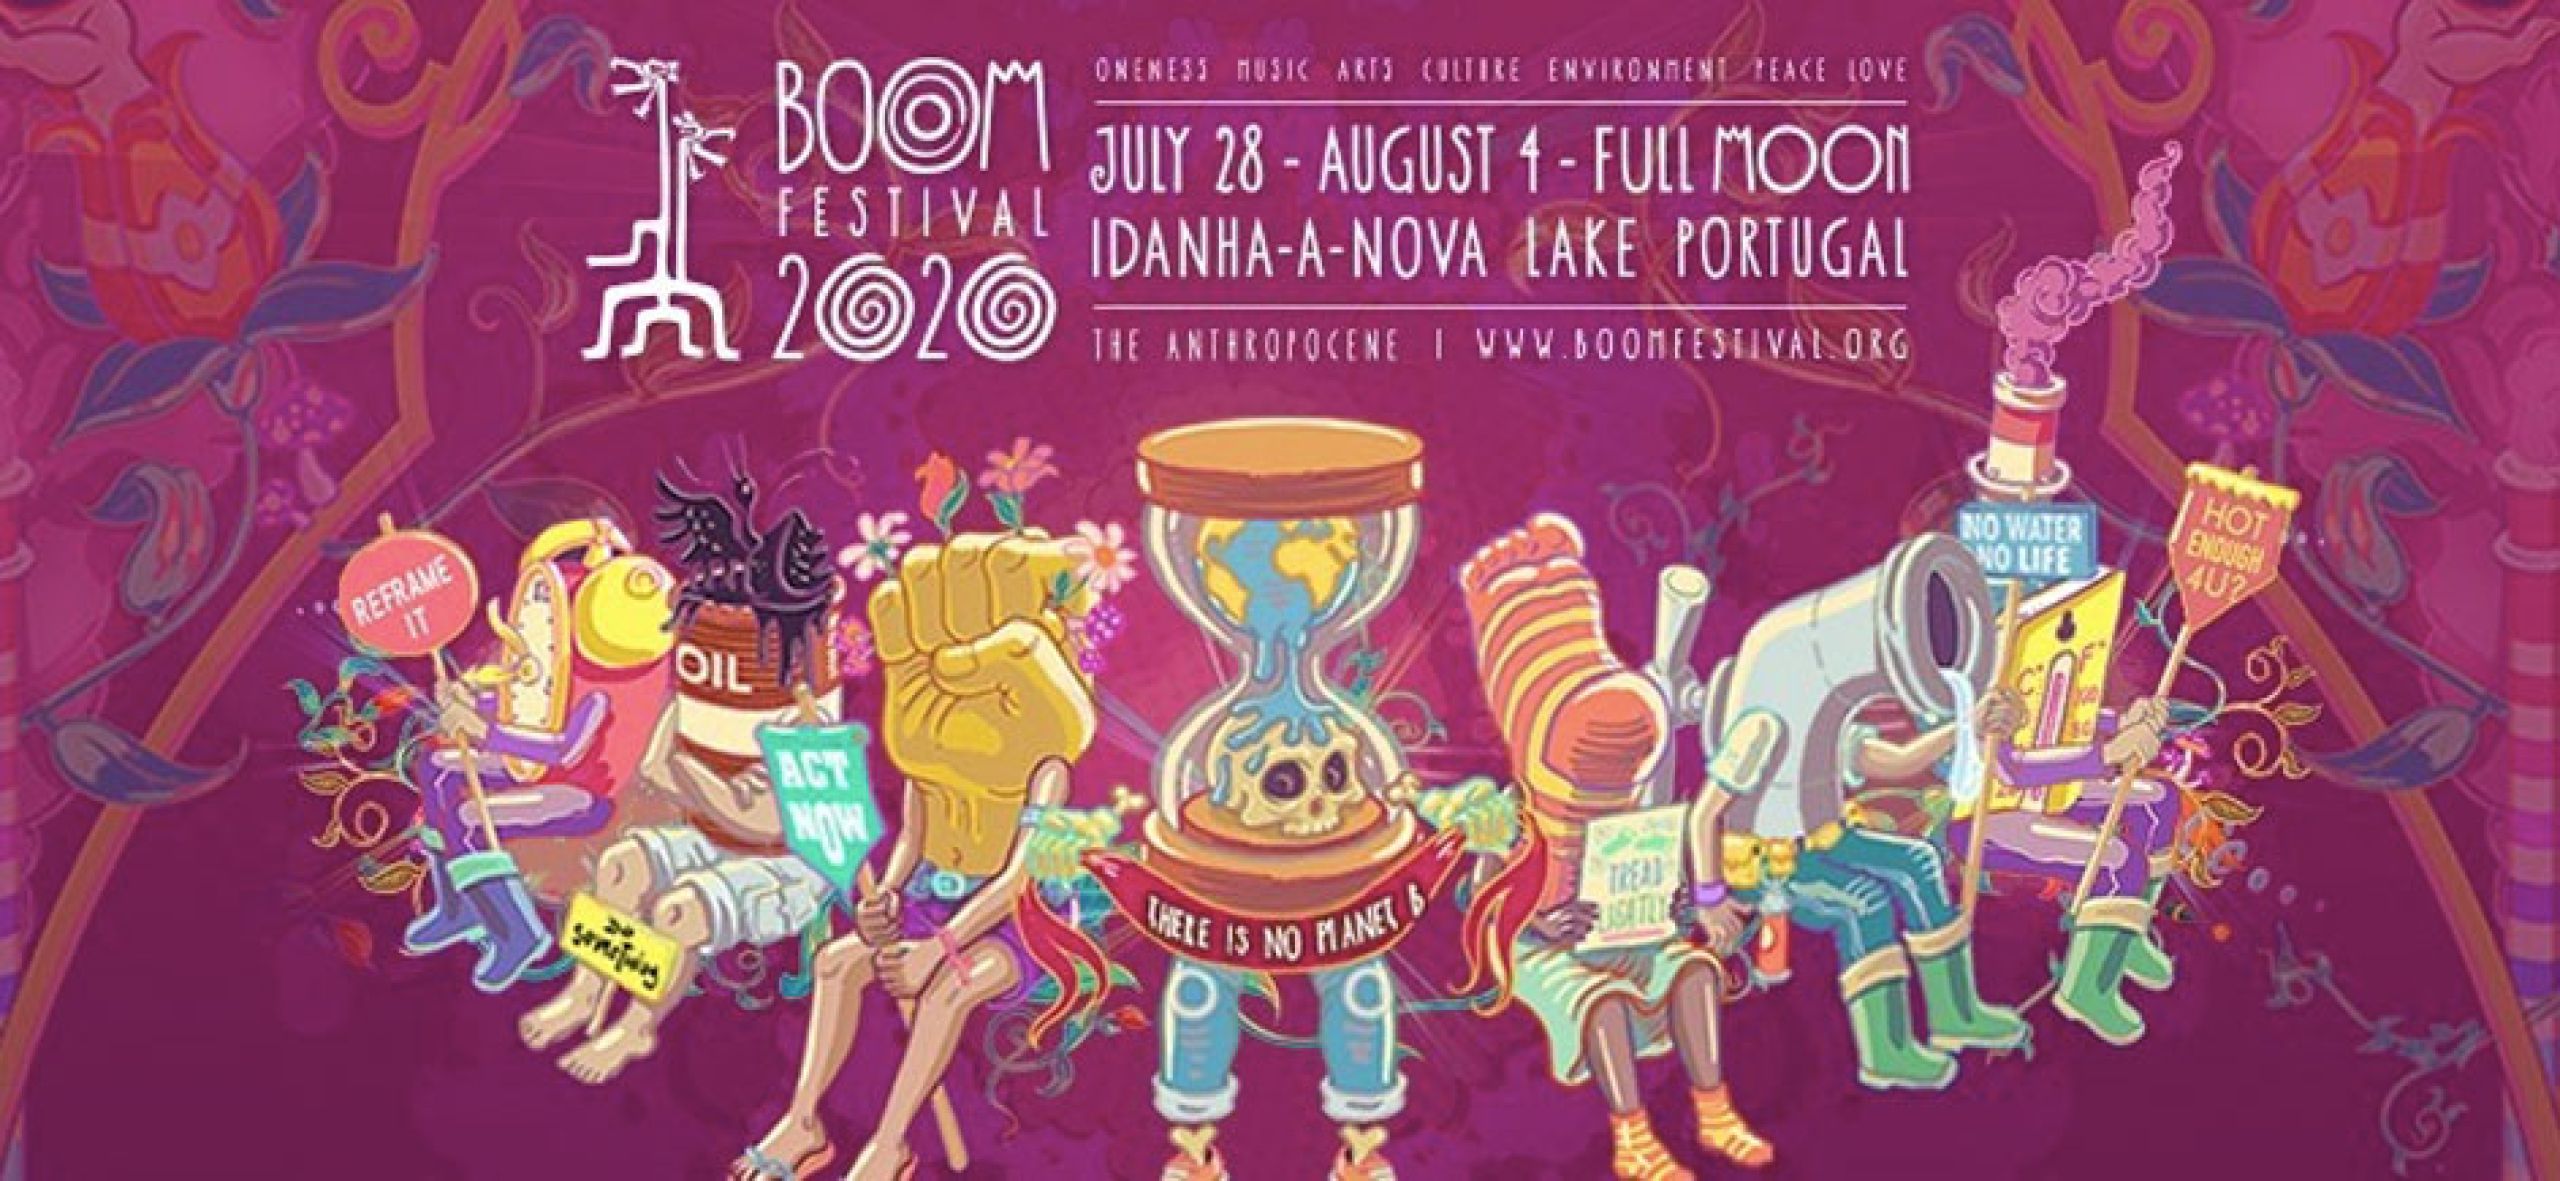 Ce festival à lieu tous les 2 ans à Idanha-a-Nova 